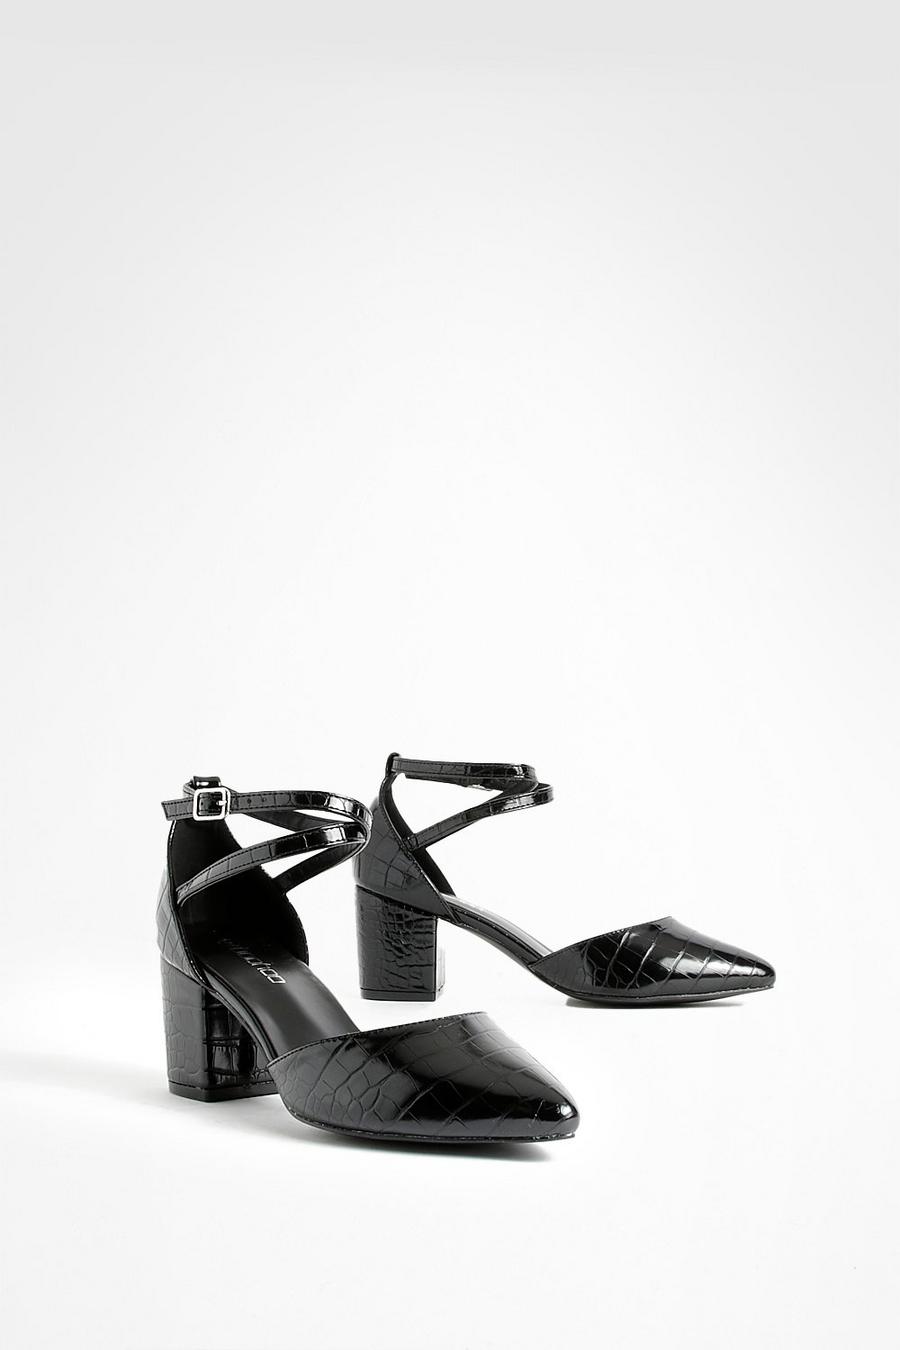 שחור nero נעליים שטוחות עם עקבים וקצה מחודד לרגל רחבה